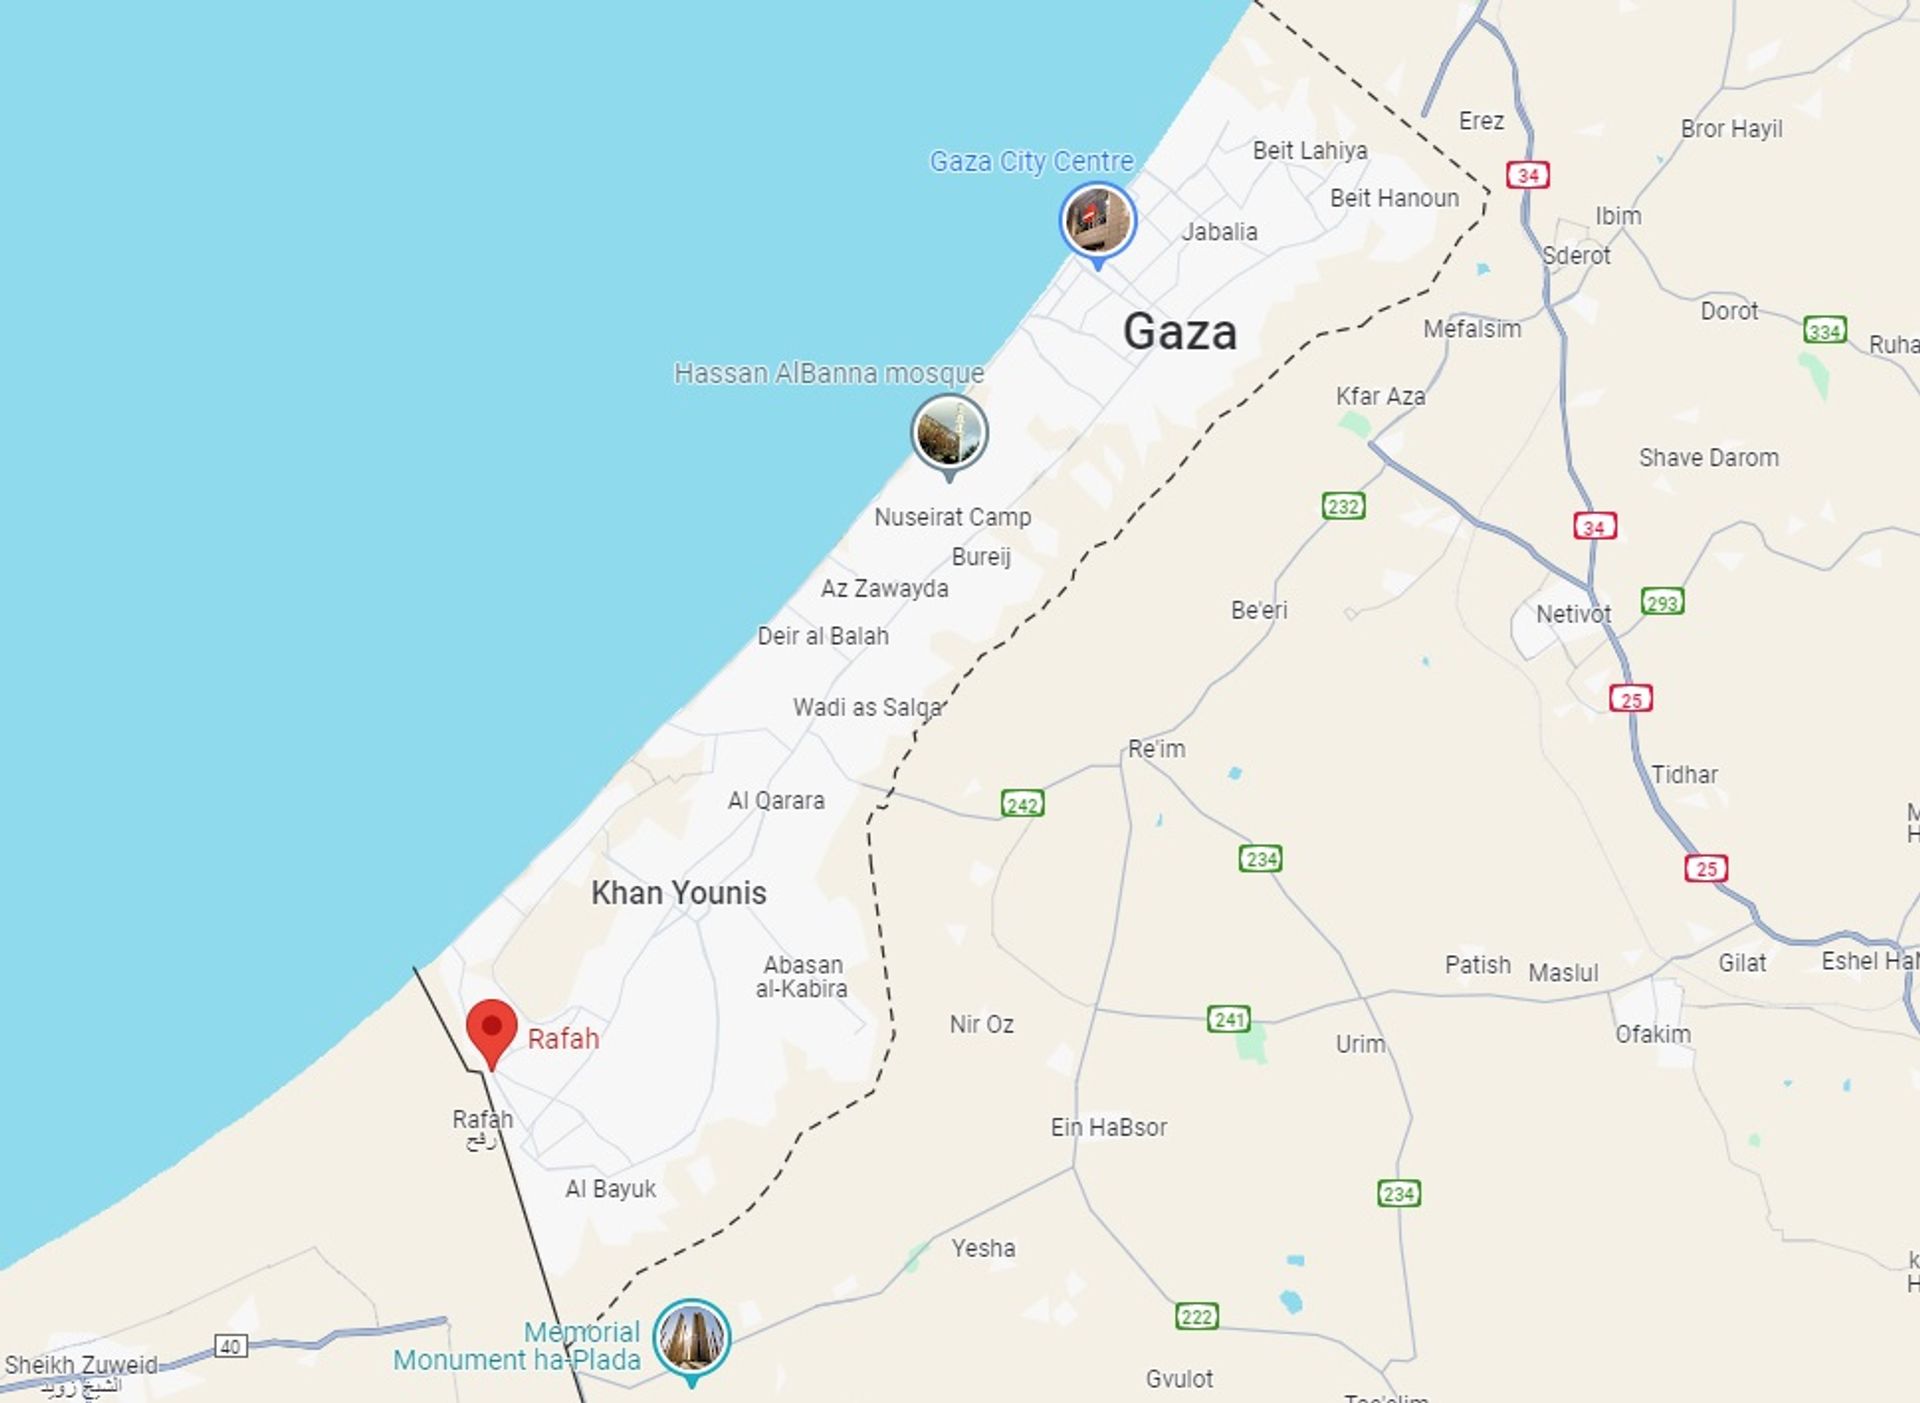 De Gazastrook, met helemaal in het zuiden Rafah